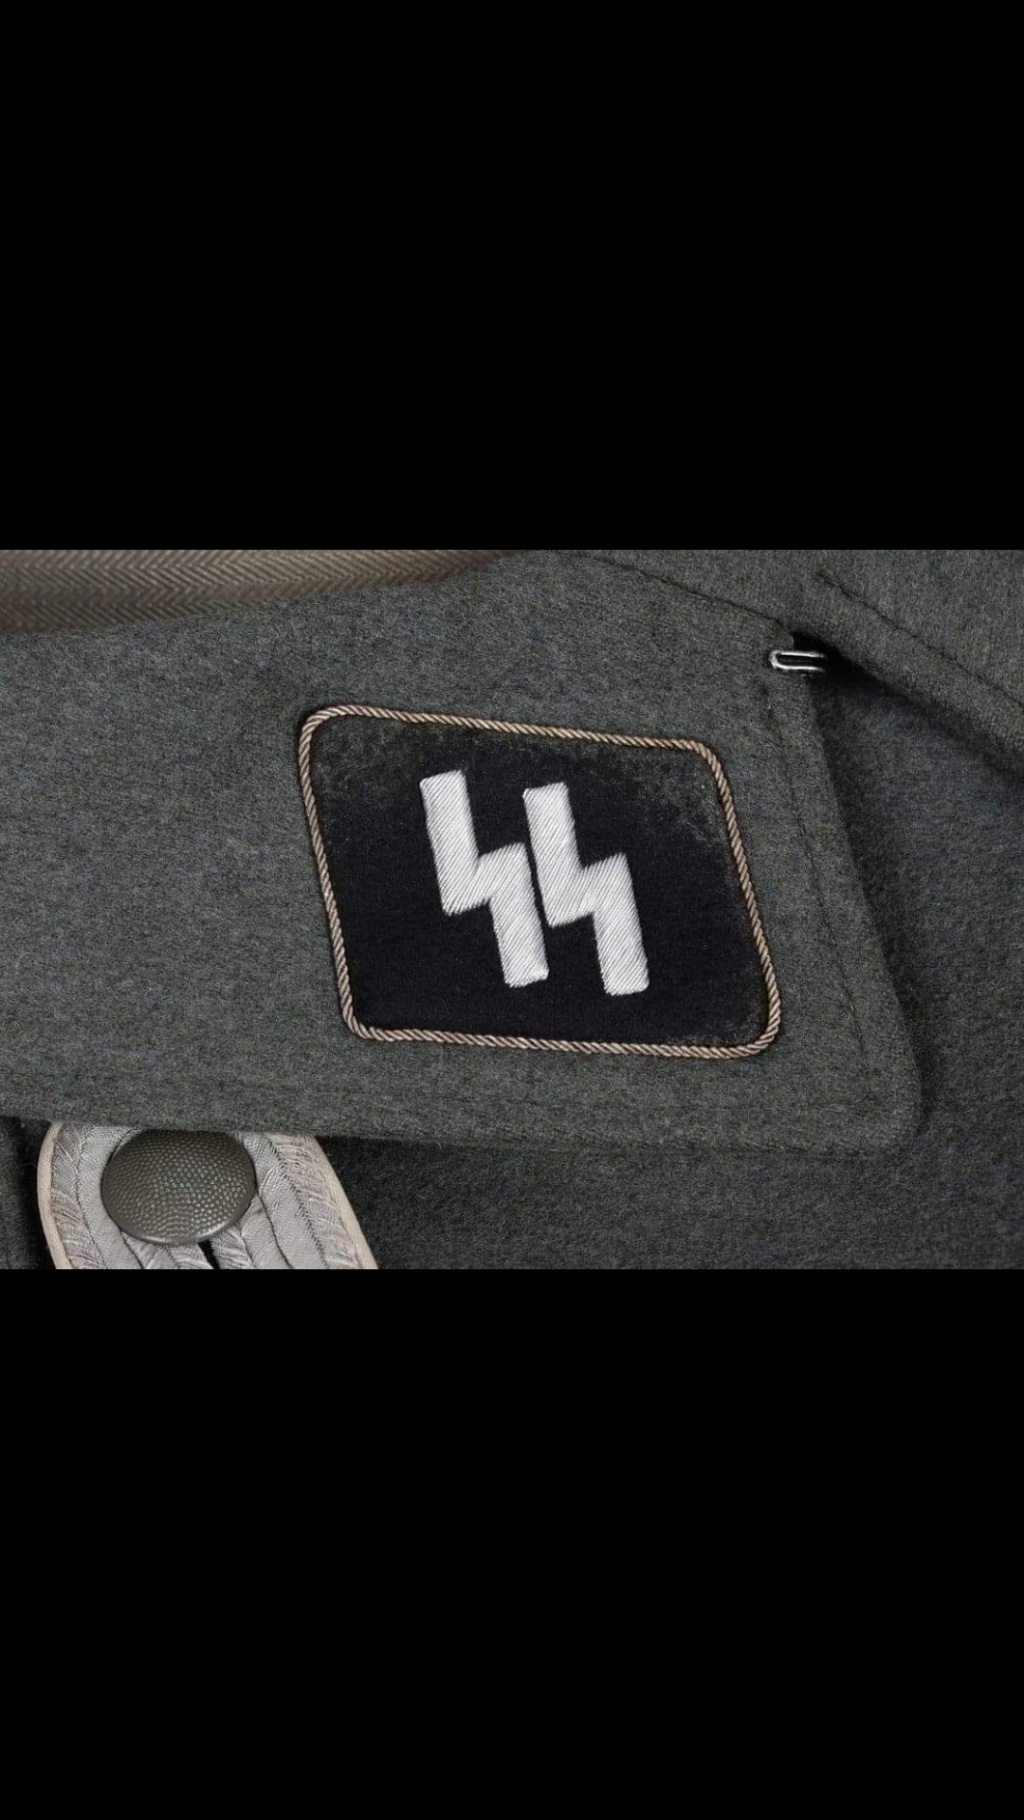 Vareuse Waffen SS Screen23